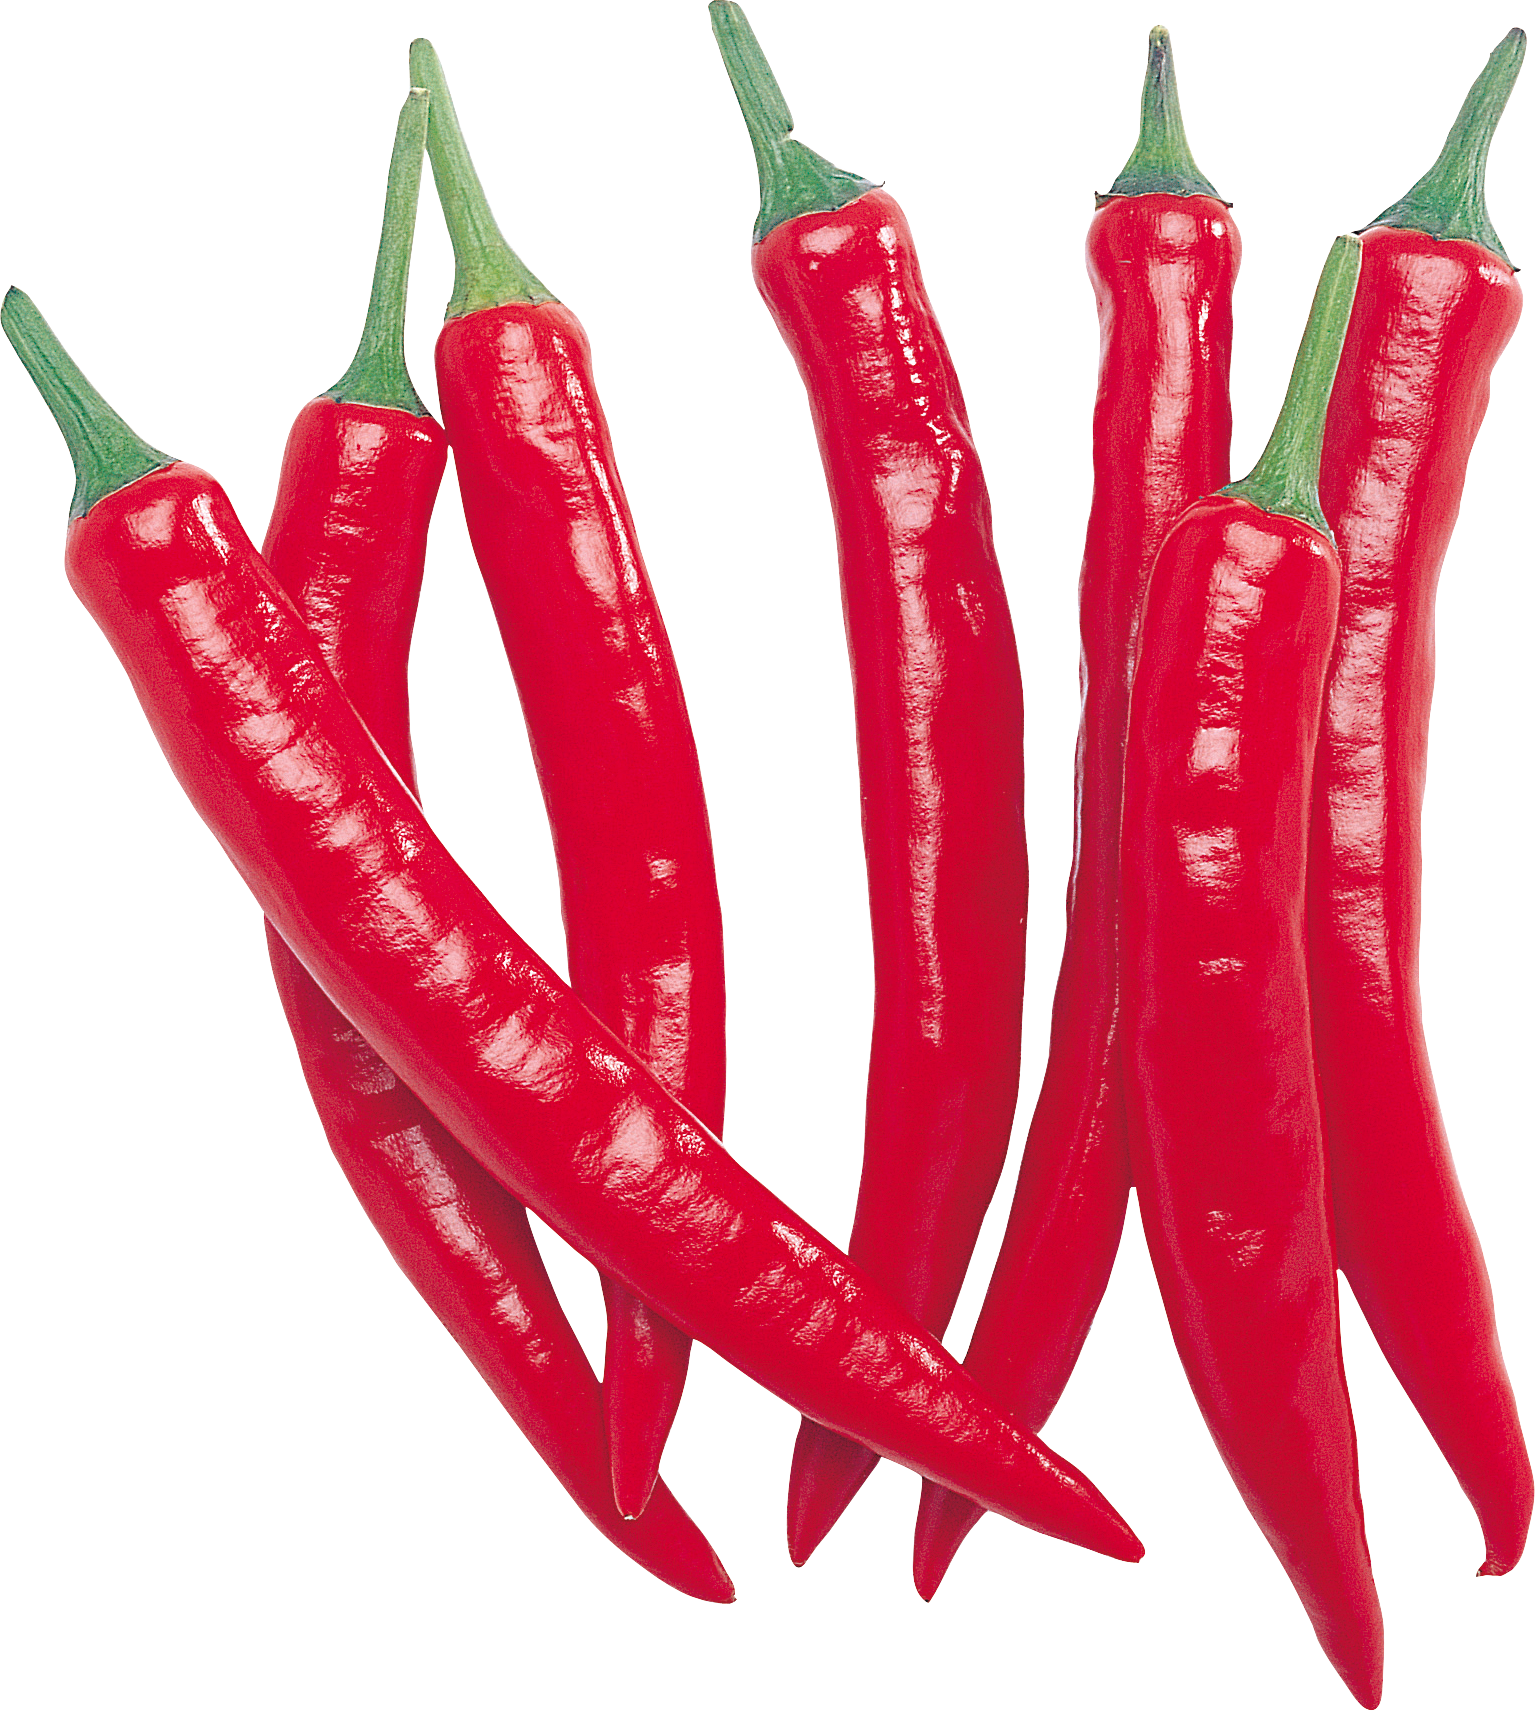 Острый перец Чили. Чили Пеппер (Chili Pepper) Гладиолус. Перец Чили красный. Красный острый перец Чили. Chilli pepper